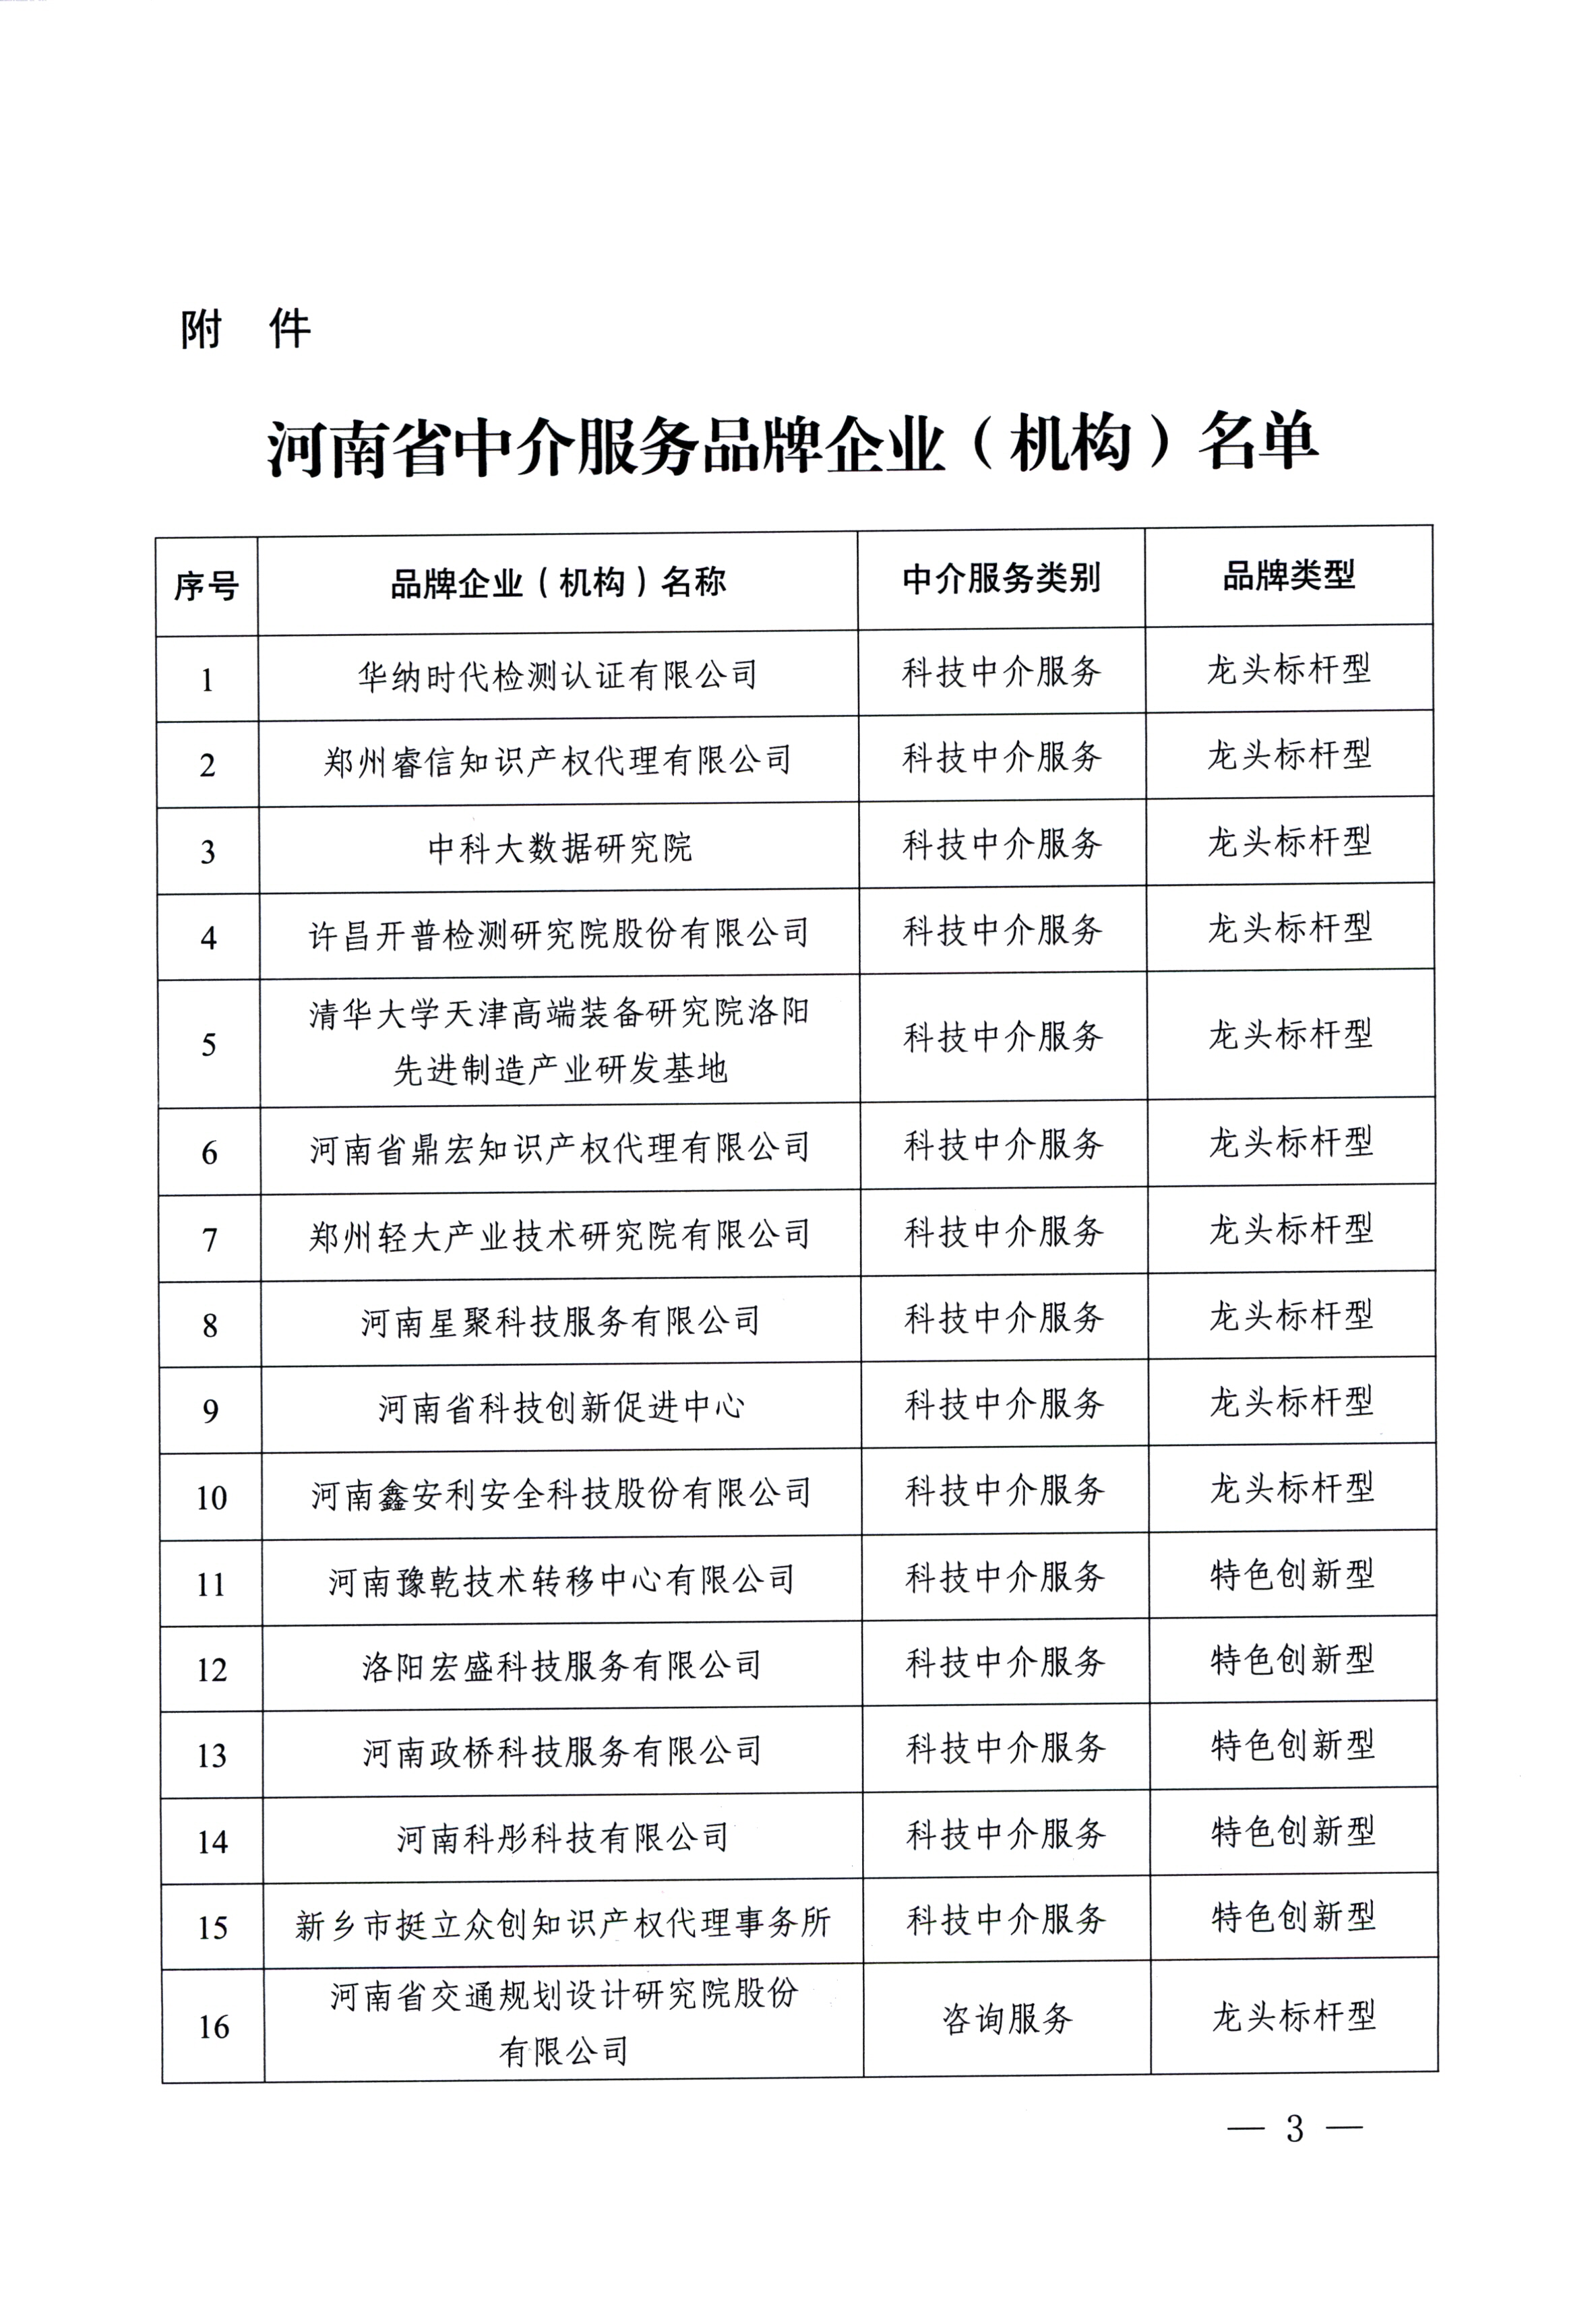 公司成功入选“100家河南省中介服务品牌企业名单”品牌类型——龙头标杆型